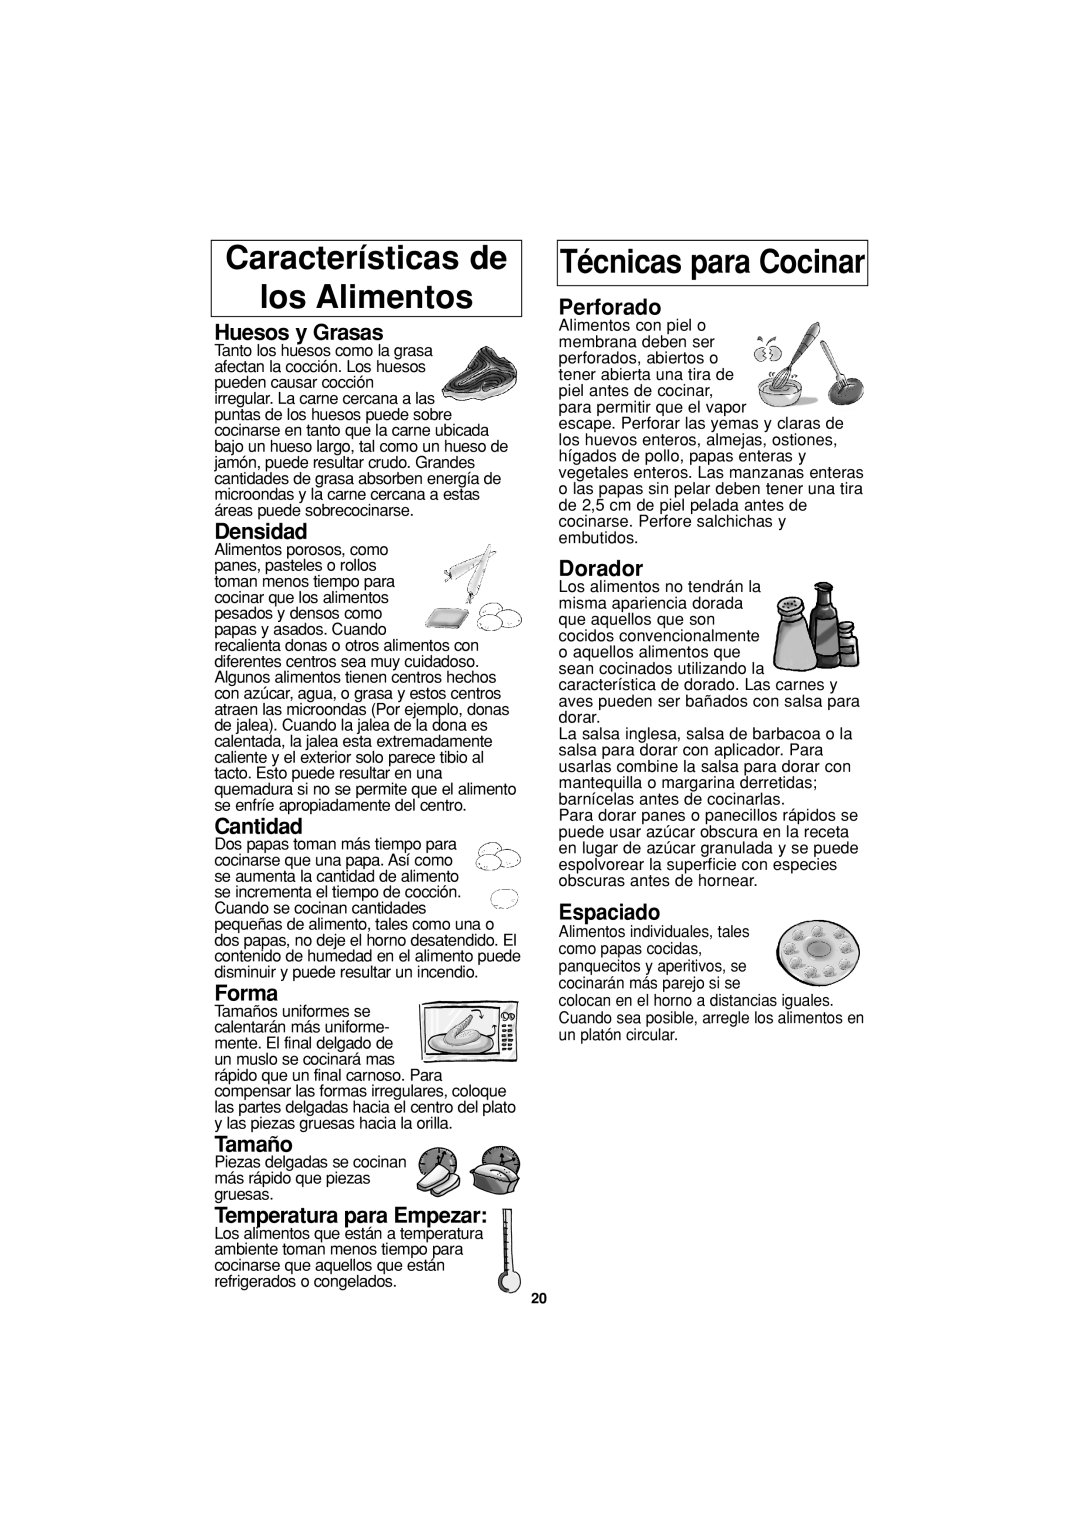 Panasonic NN-S334 Características de los Alimentos, Técnicas para Cocinar, Huesos y Grasas, Densidad, Cantidad, Forma 